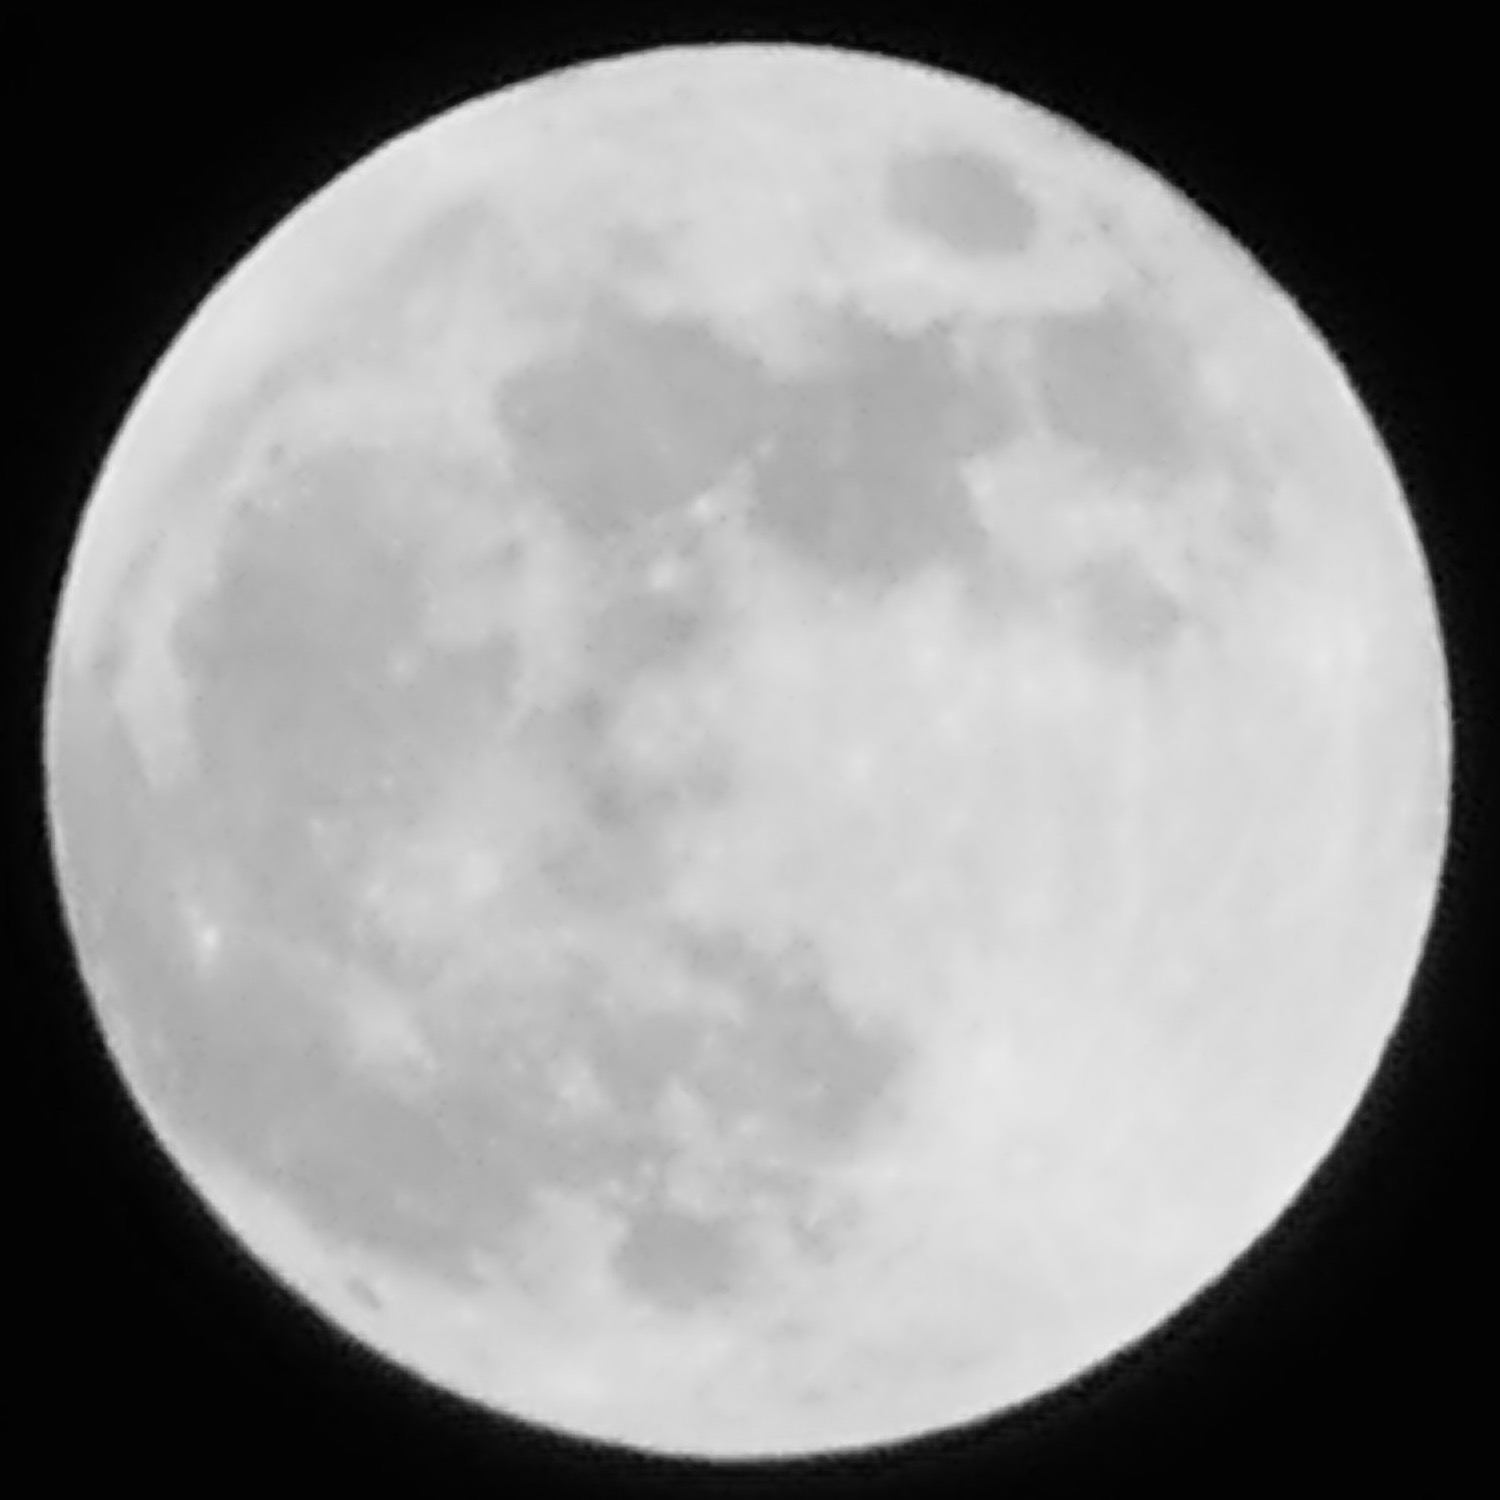 20180131_full_moon_AW.jpg